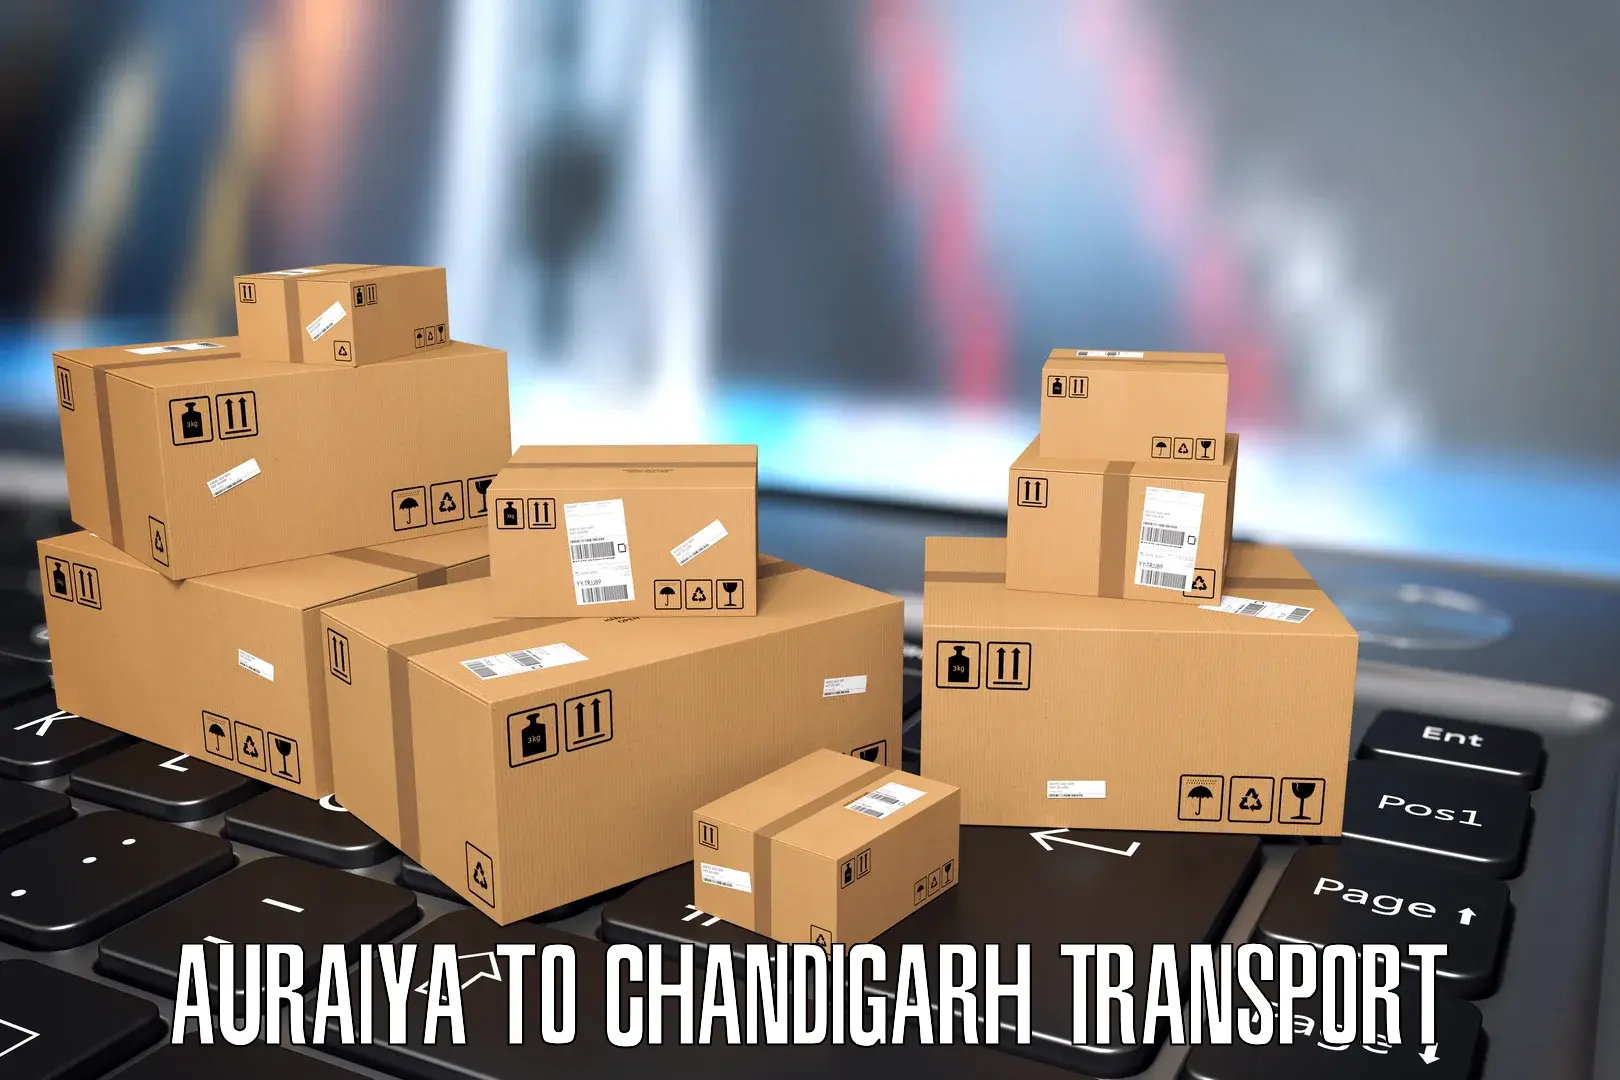 Two wheeler parcel service Auraiya to Chandigarh